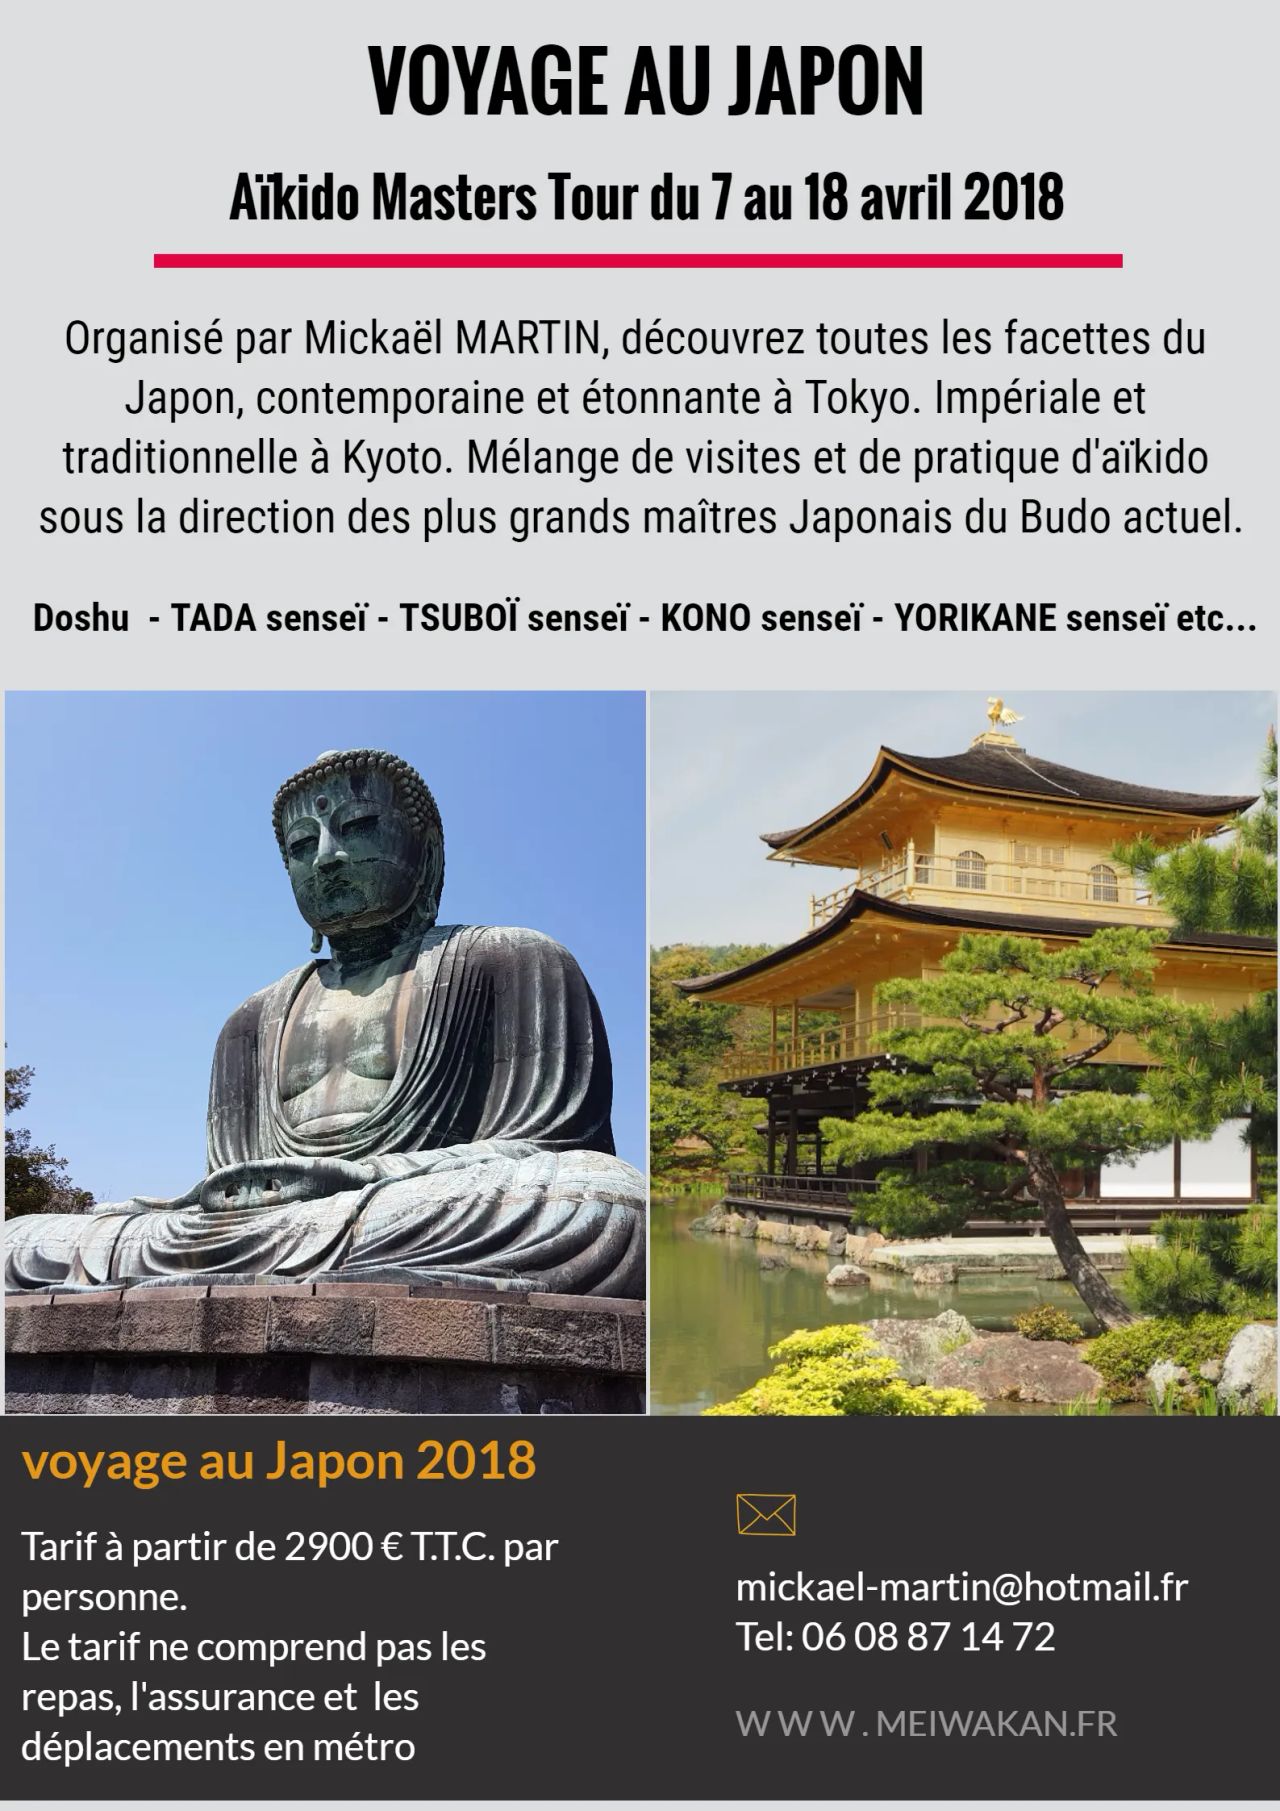 Aïkido Masters Tour - Voyage au Japon 